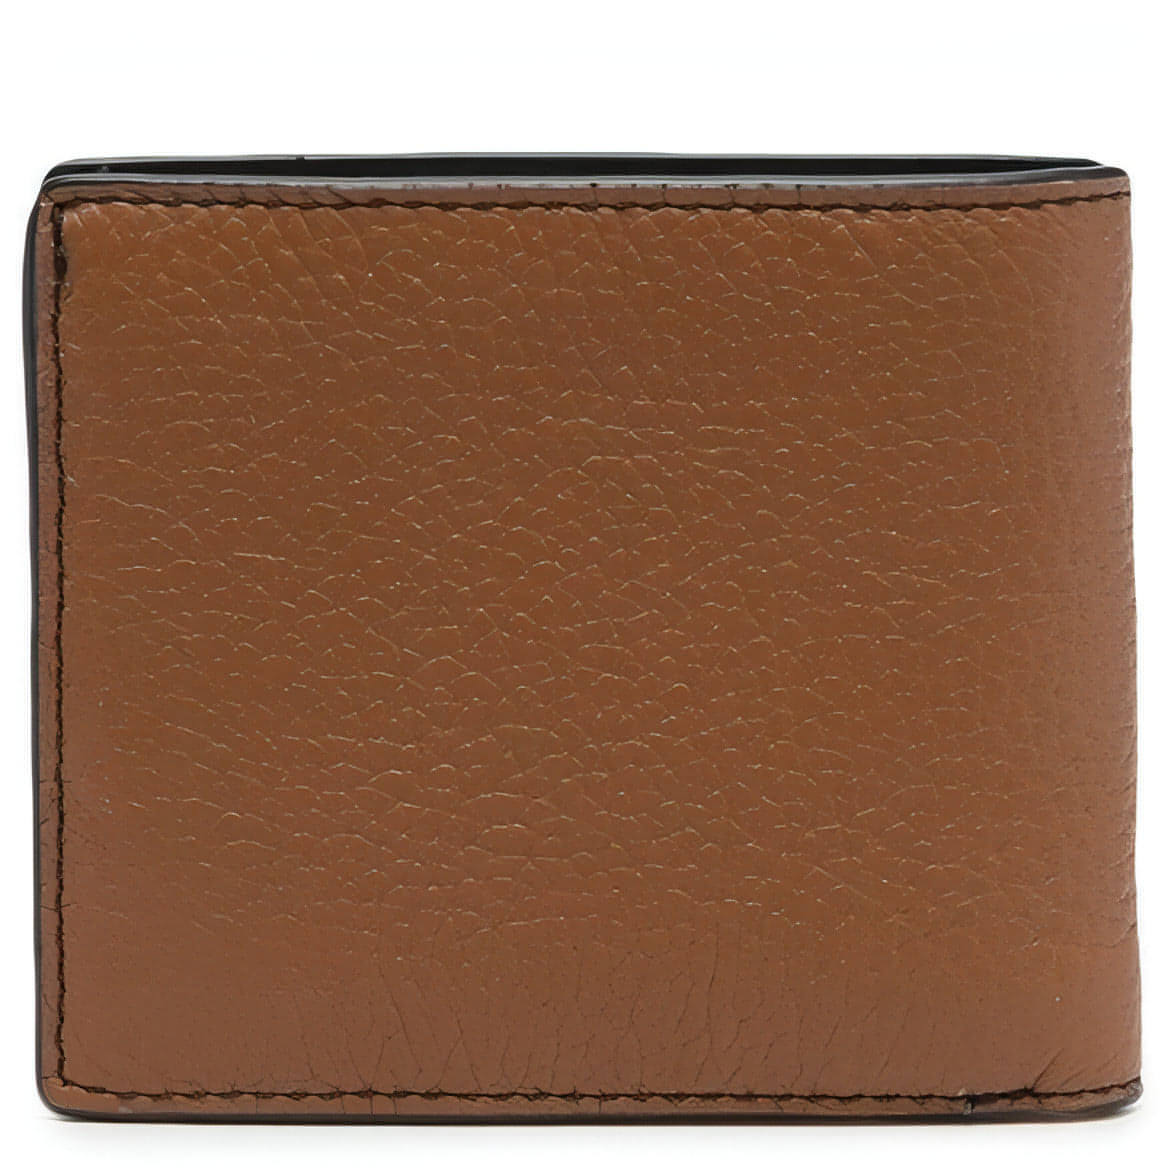 MICHAEL KORS vyriška ruda piniginė Billfold wallet